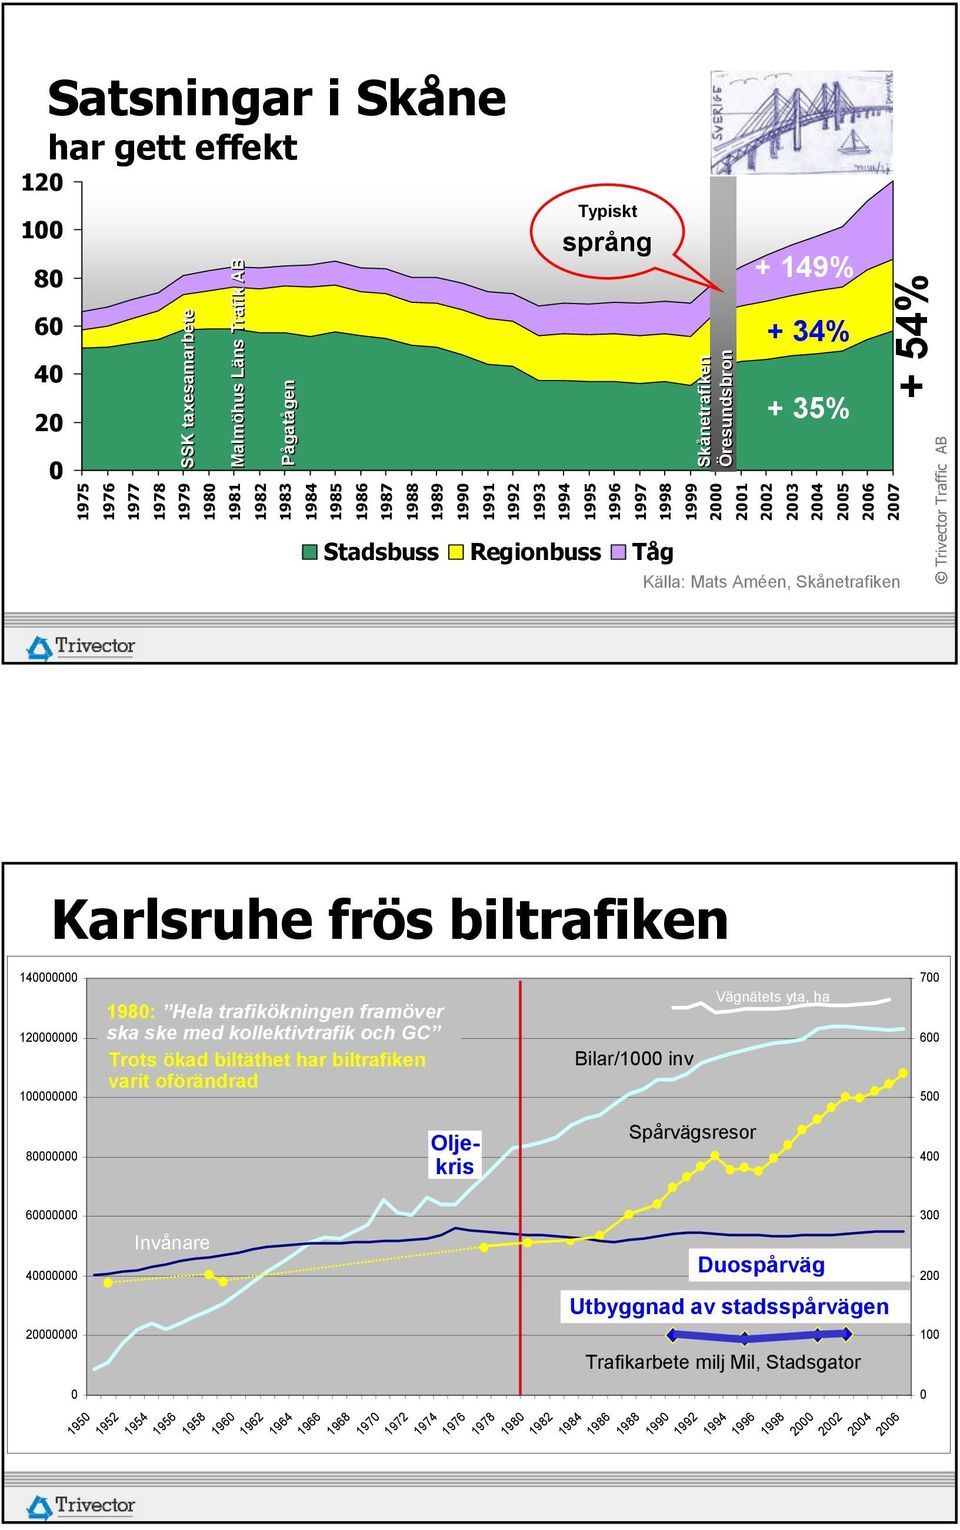 Karlsruhe frös biltrafiken 140000000 120000000 100000000 1980: Hela trafikökningen framöver ska ske med kollektivtrafik och GC Trots ökad biltäthet har biltrafiken varit oförändrad Bilar/1000 inv